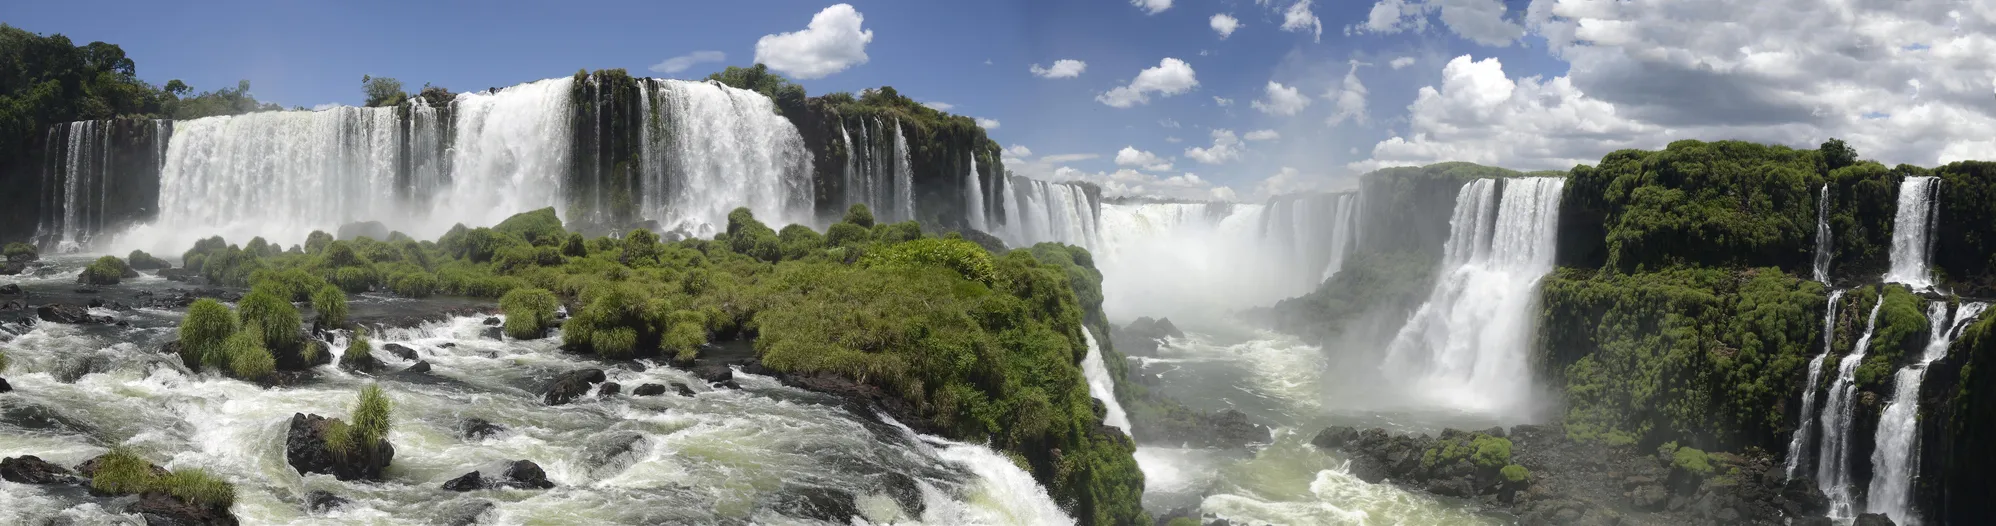 Cataratas del Iguazú, les fameuses chute d'Iguaçu, province de Misiones, à la frontière entre le Brésil et l'Argentine | © iStock / ct johnson